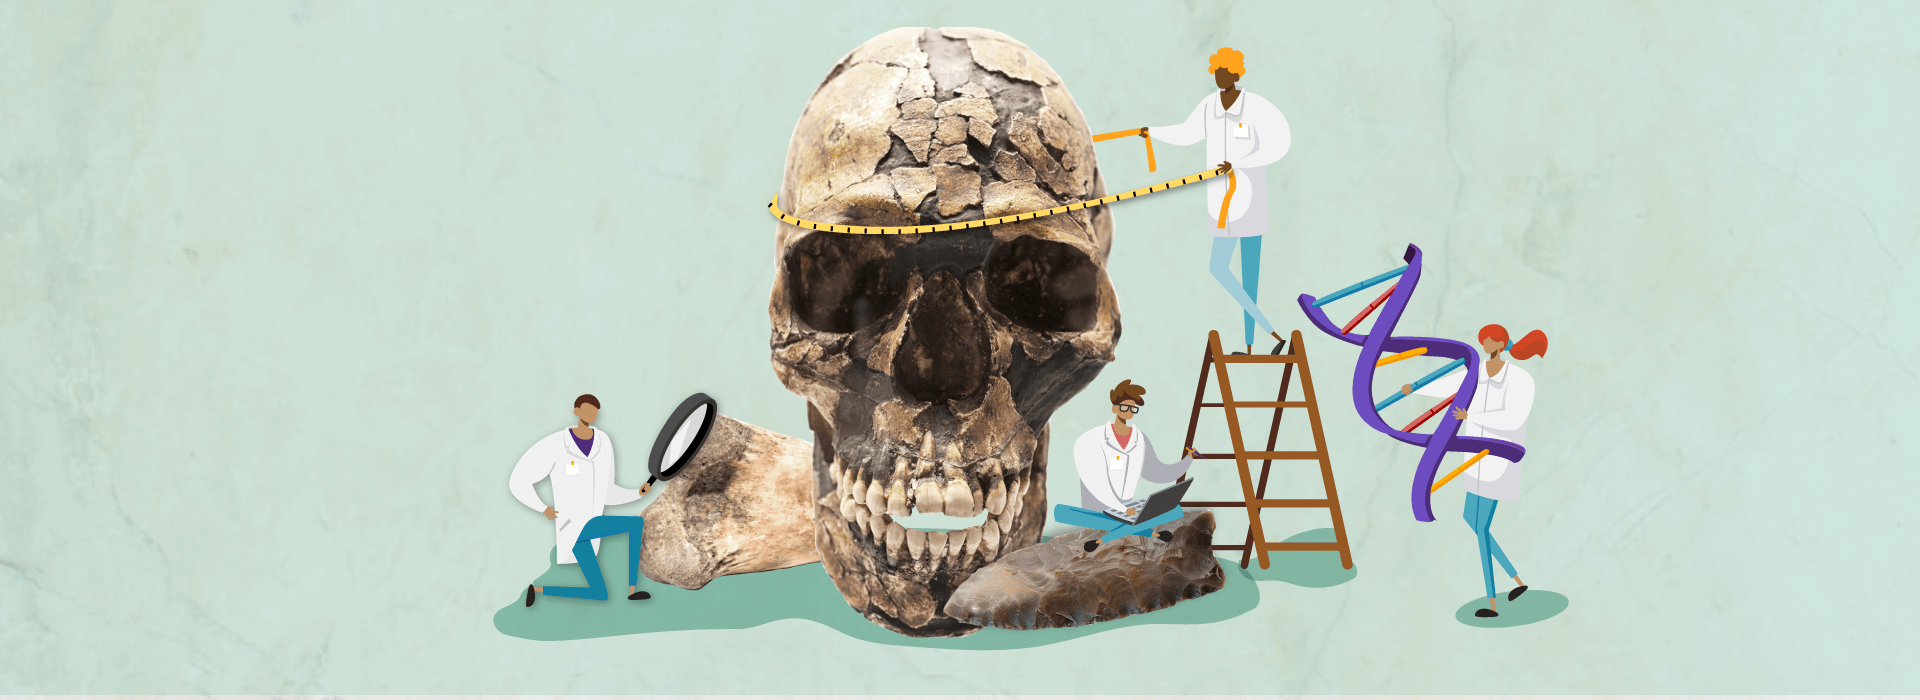 Montagem de um crânio de homo sapiens com ilustrações de cientistas ao seu redor.